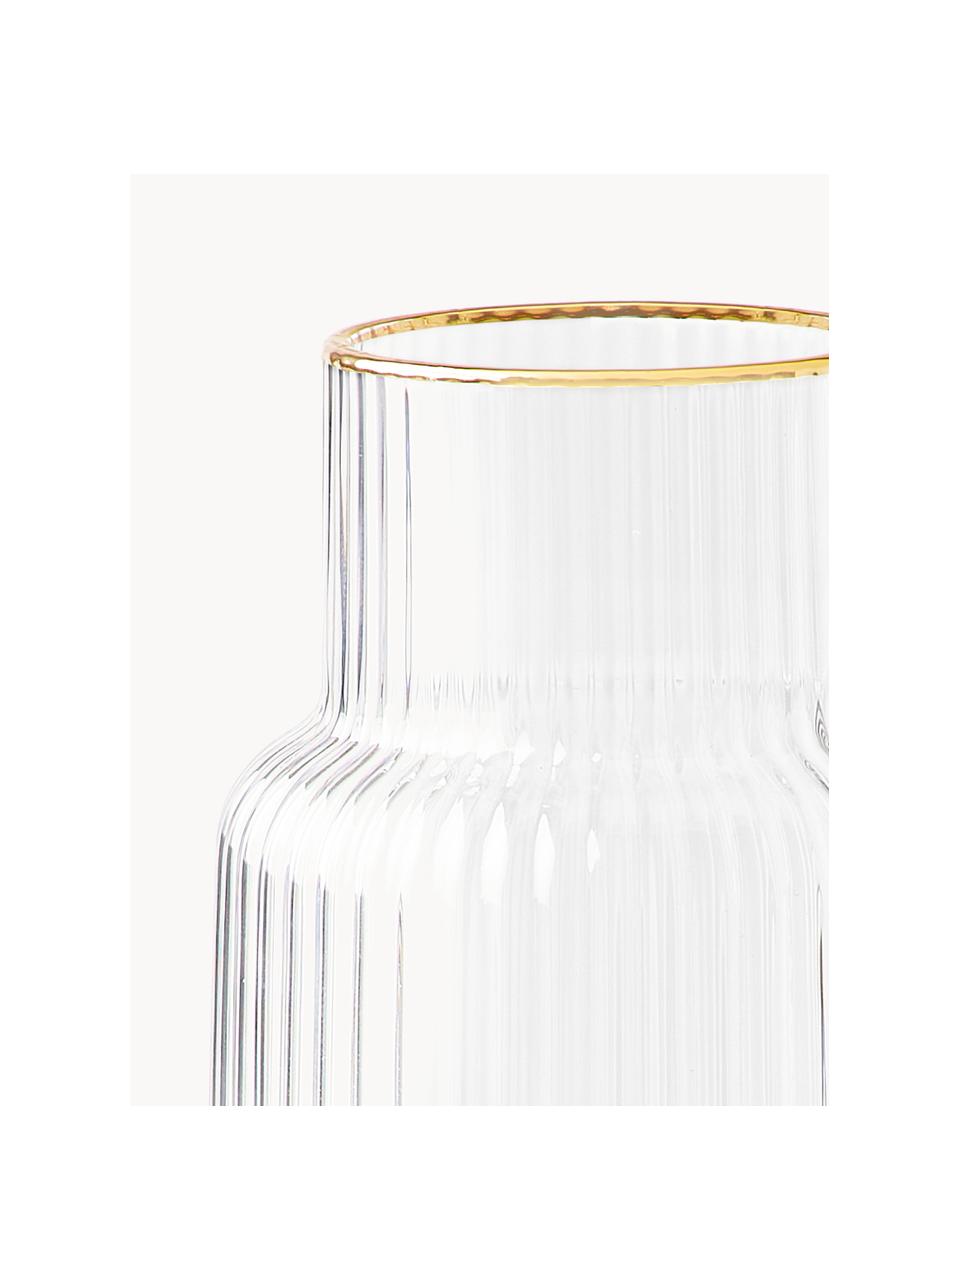 Carafe à eau artisanale avec bord doré Minna, 1,1 L, Transparent avec bord doré, 1,1 L